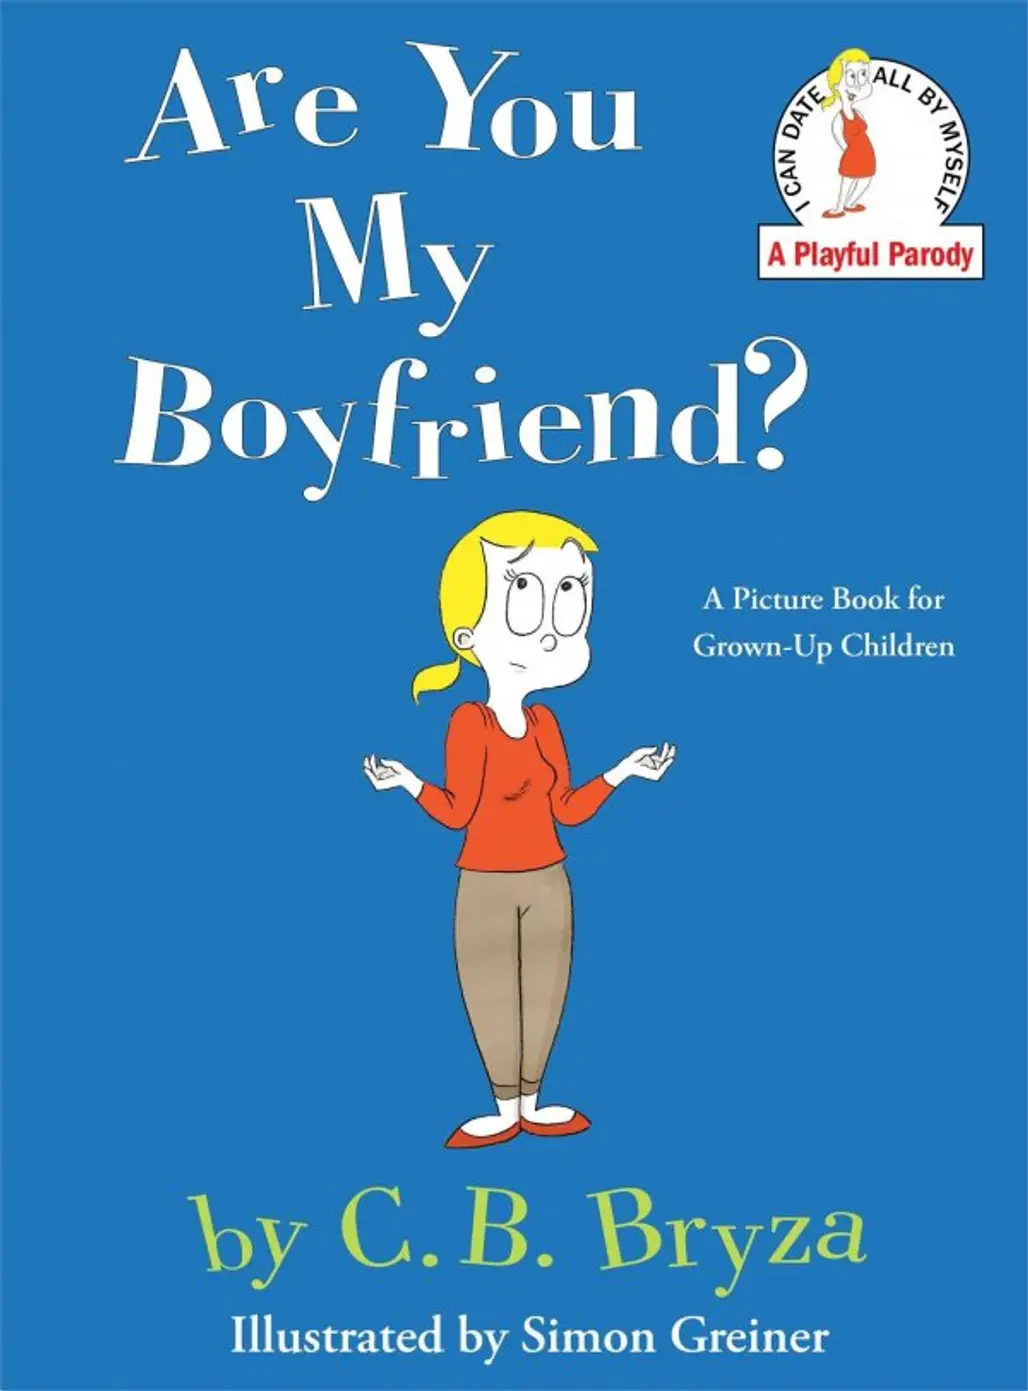 Are You My Boyfriend? by C. B. Bryza